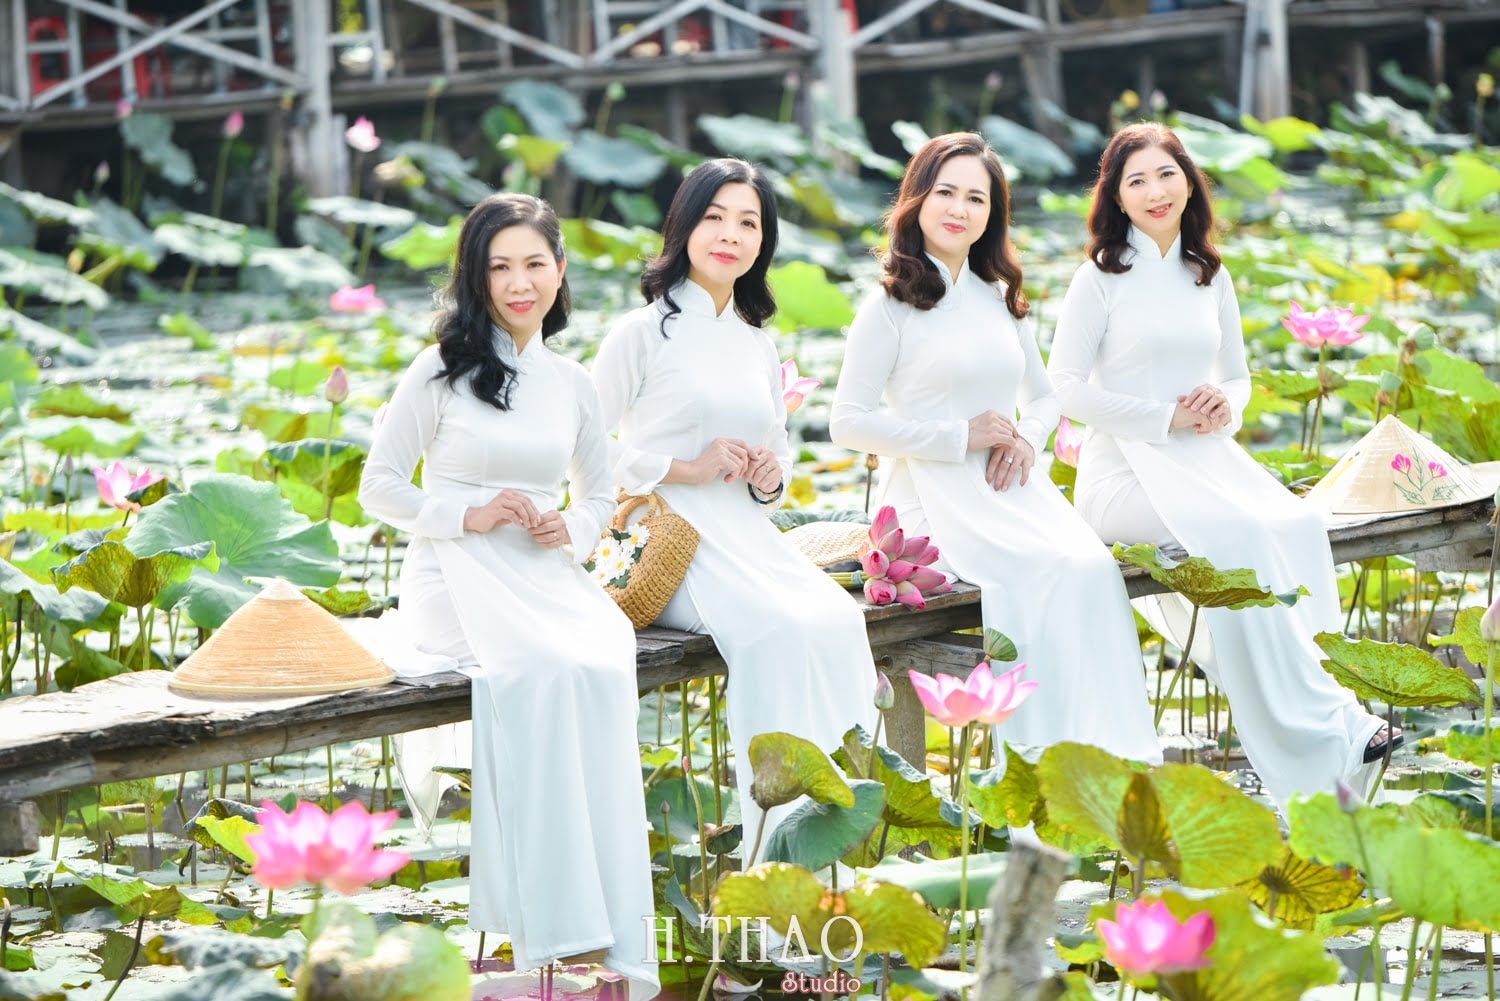 Anh Hoa sen 19 min - Chùm ảnh áo dài nhóm chụp tết năm 2019 - HThao Studio